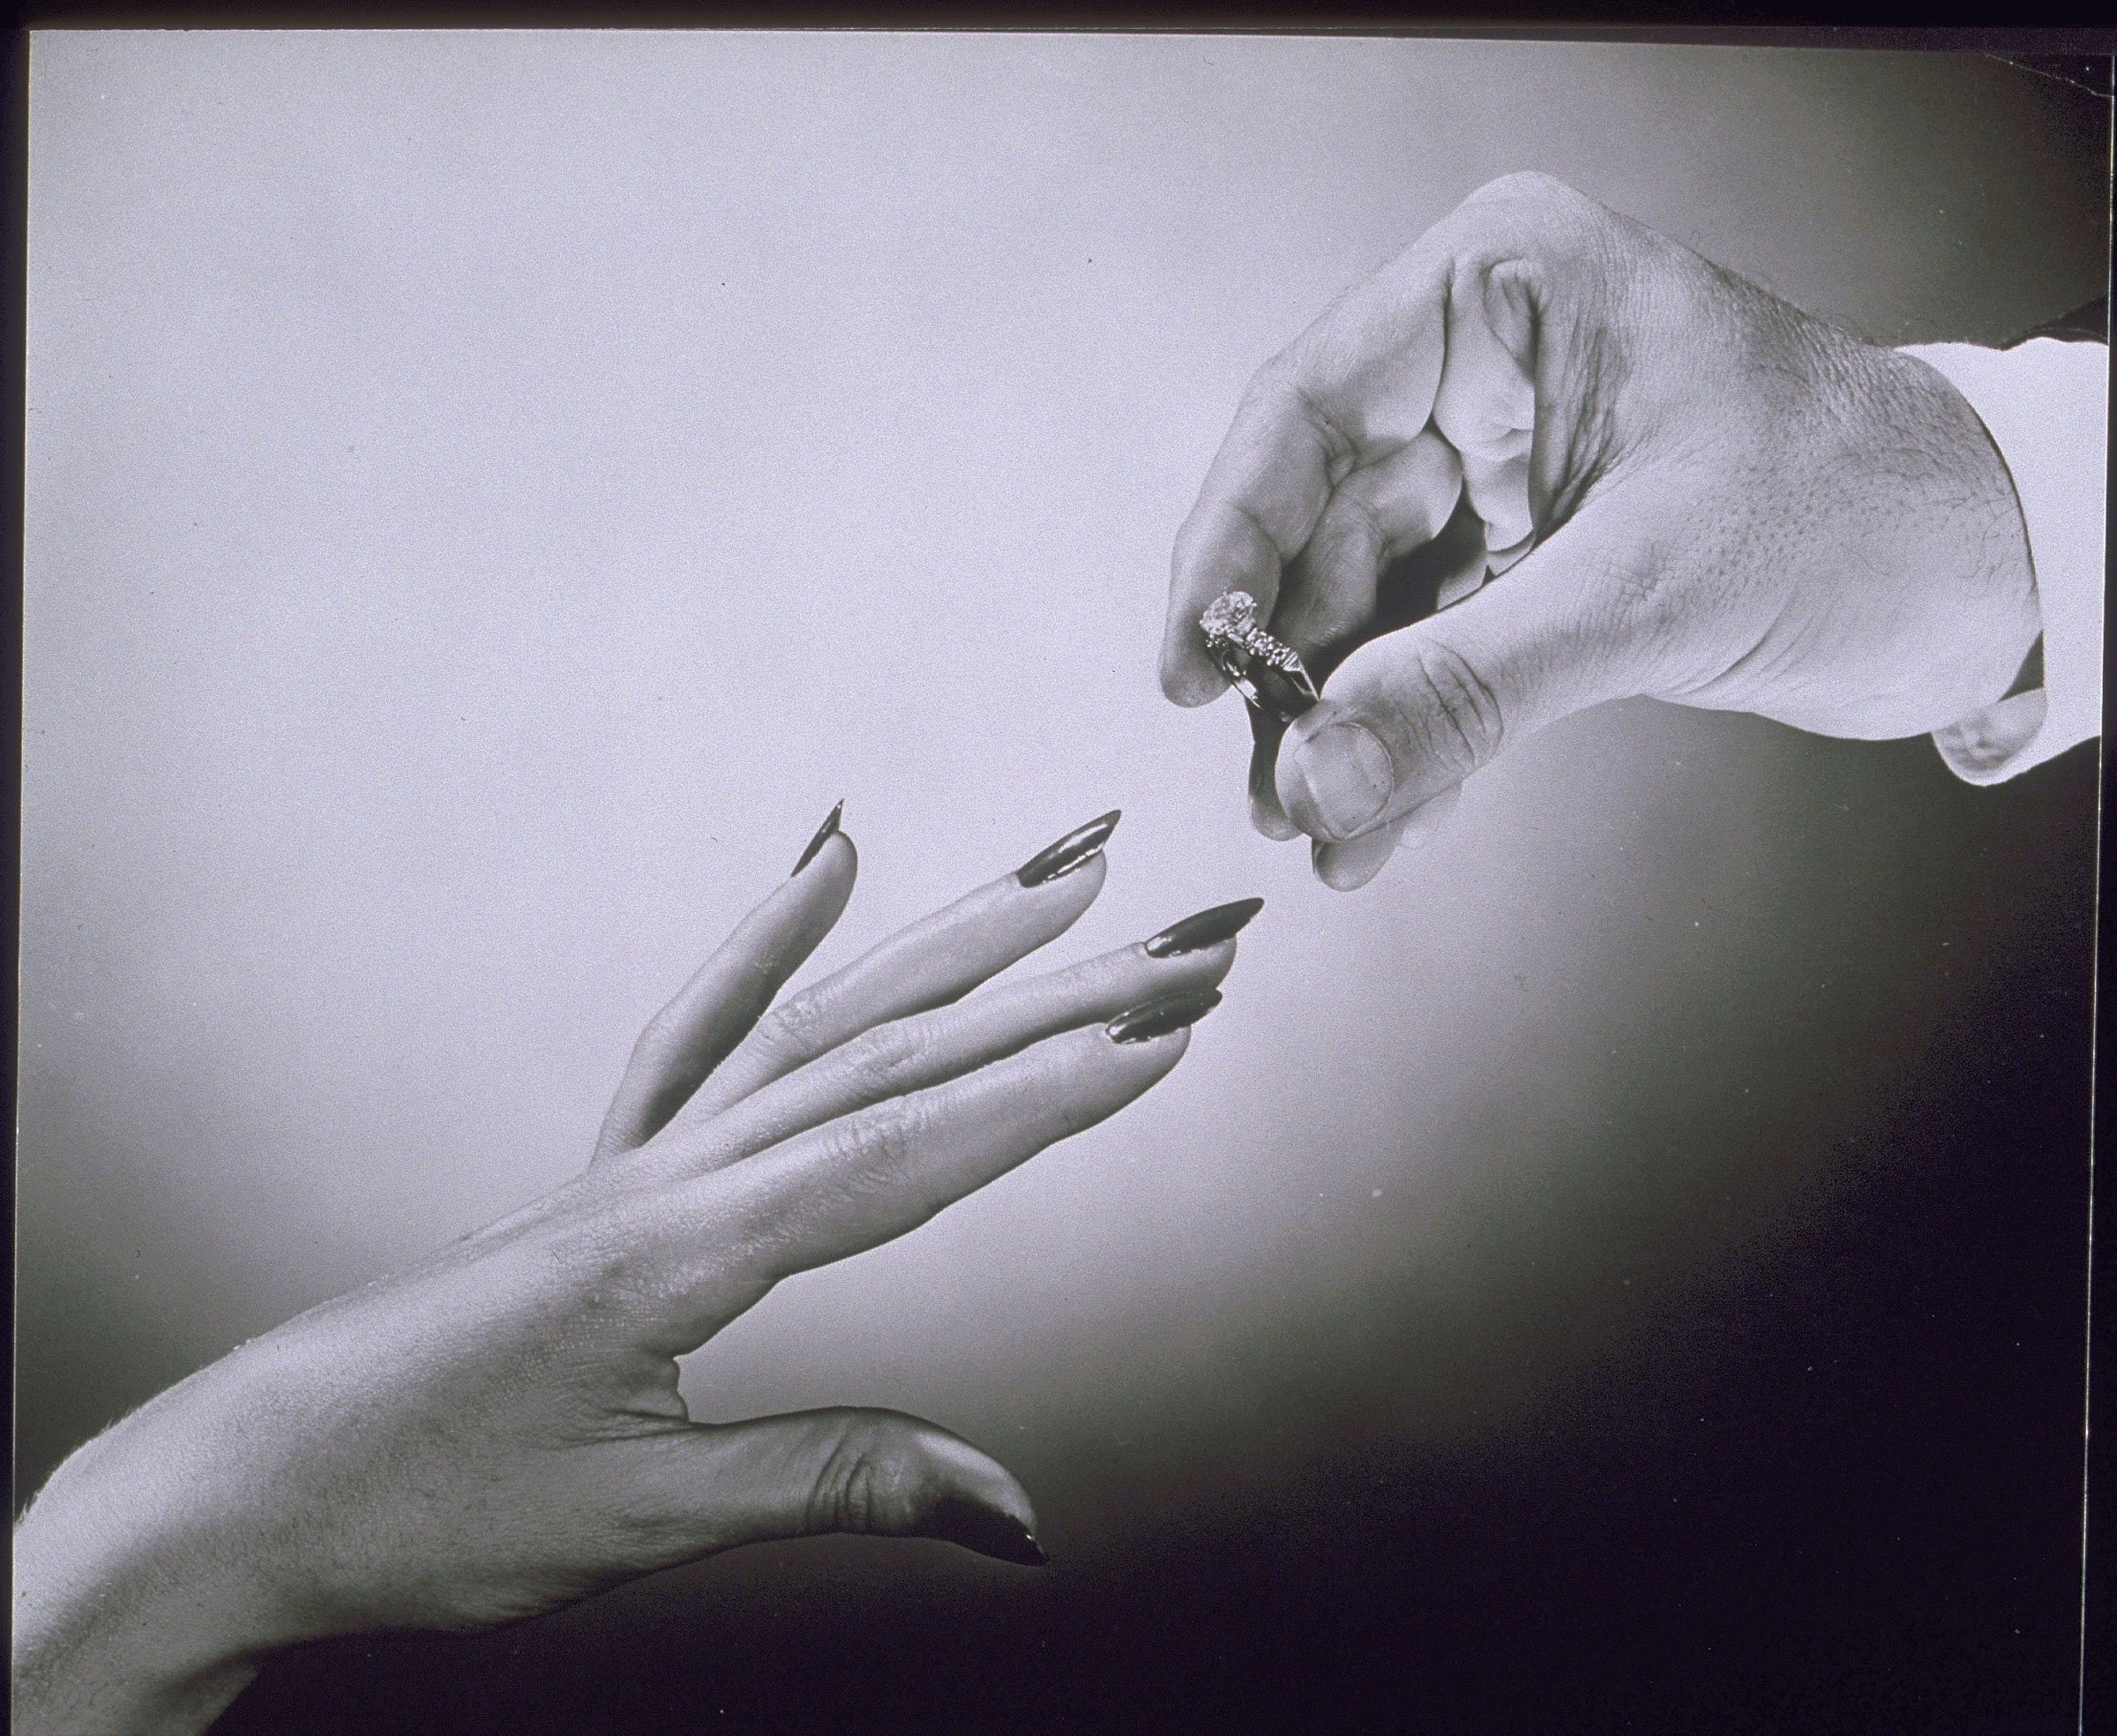 黑白影像中，一隻手為另一隻手戴上結婚戒指